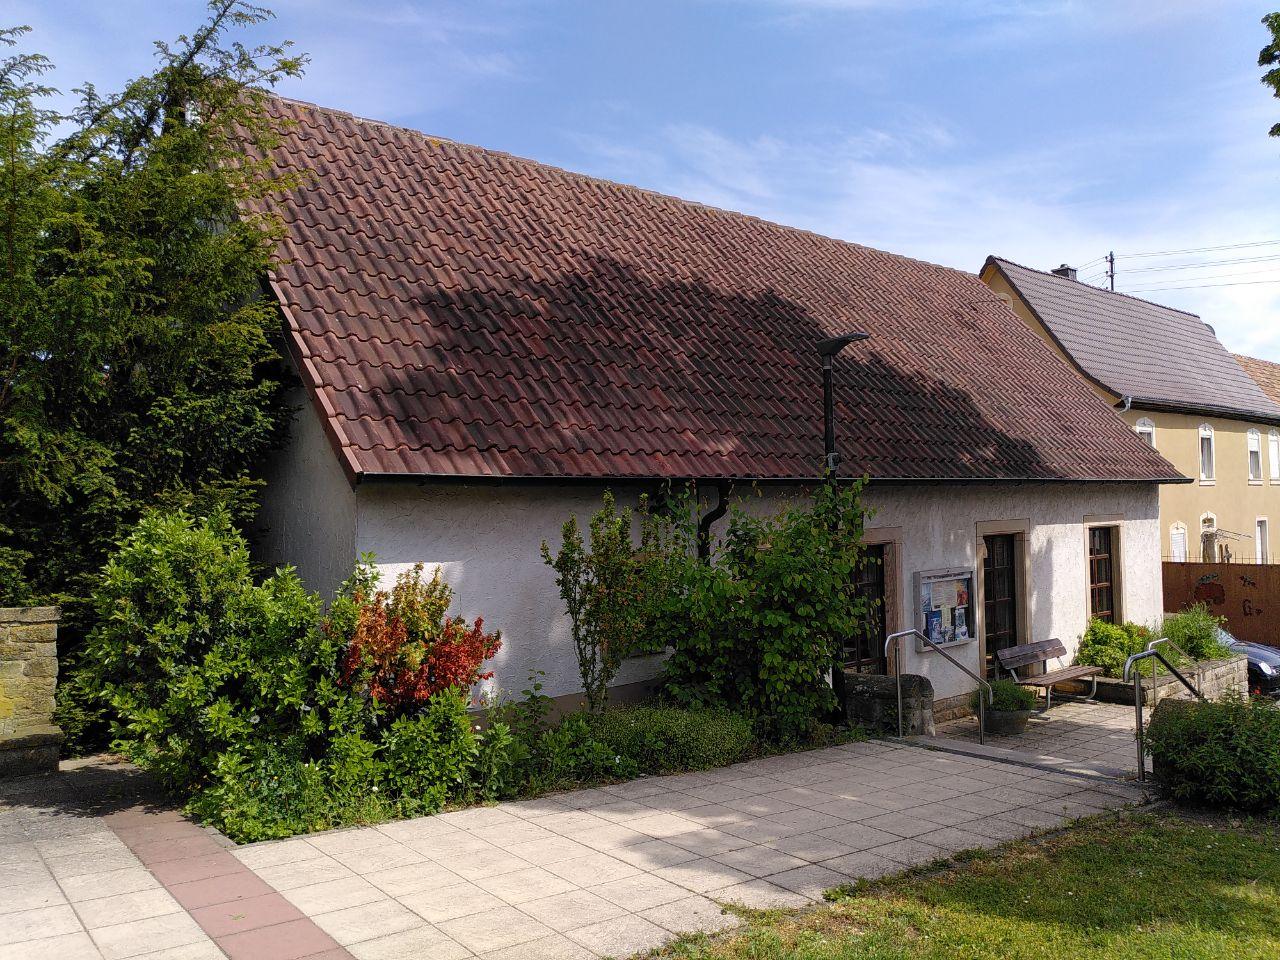 Datei:Protestantisches Gemeindehaus Dammheim.jpg